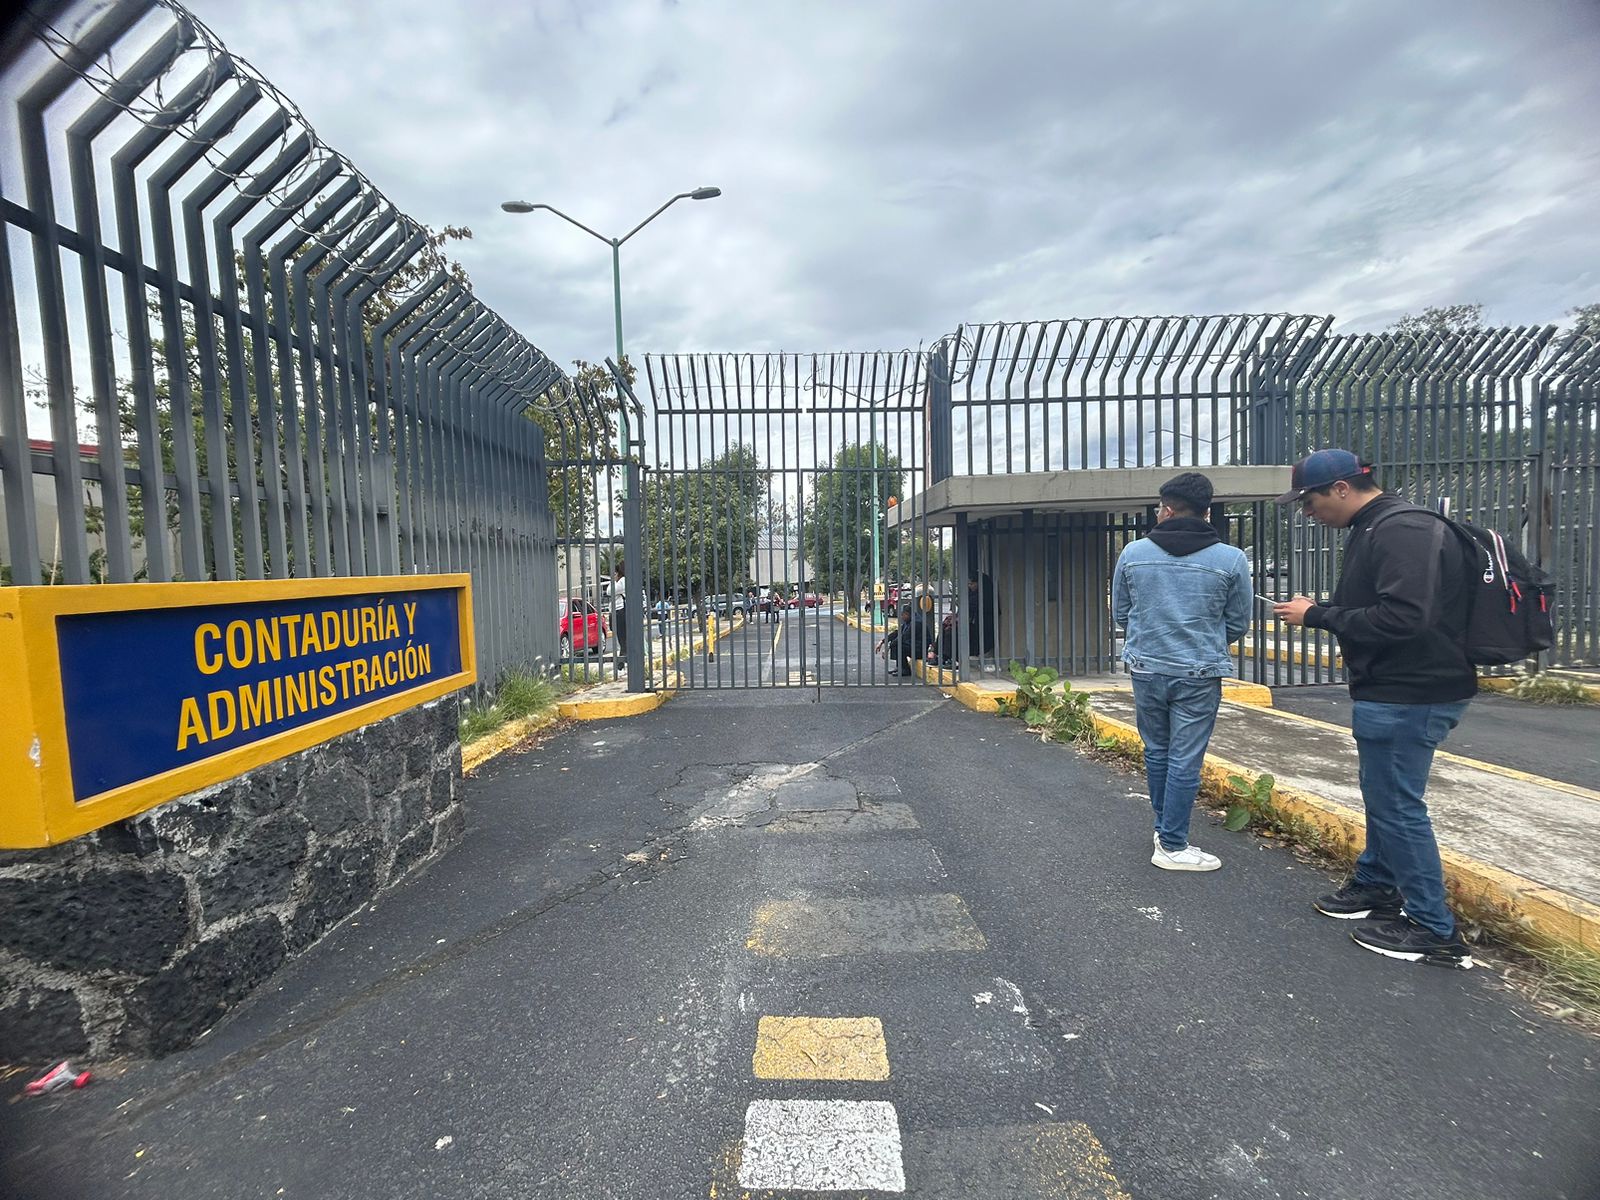 Detienen a 4 personas tras irrupción en Facultad de Contaduría de la UNAM